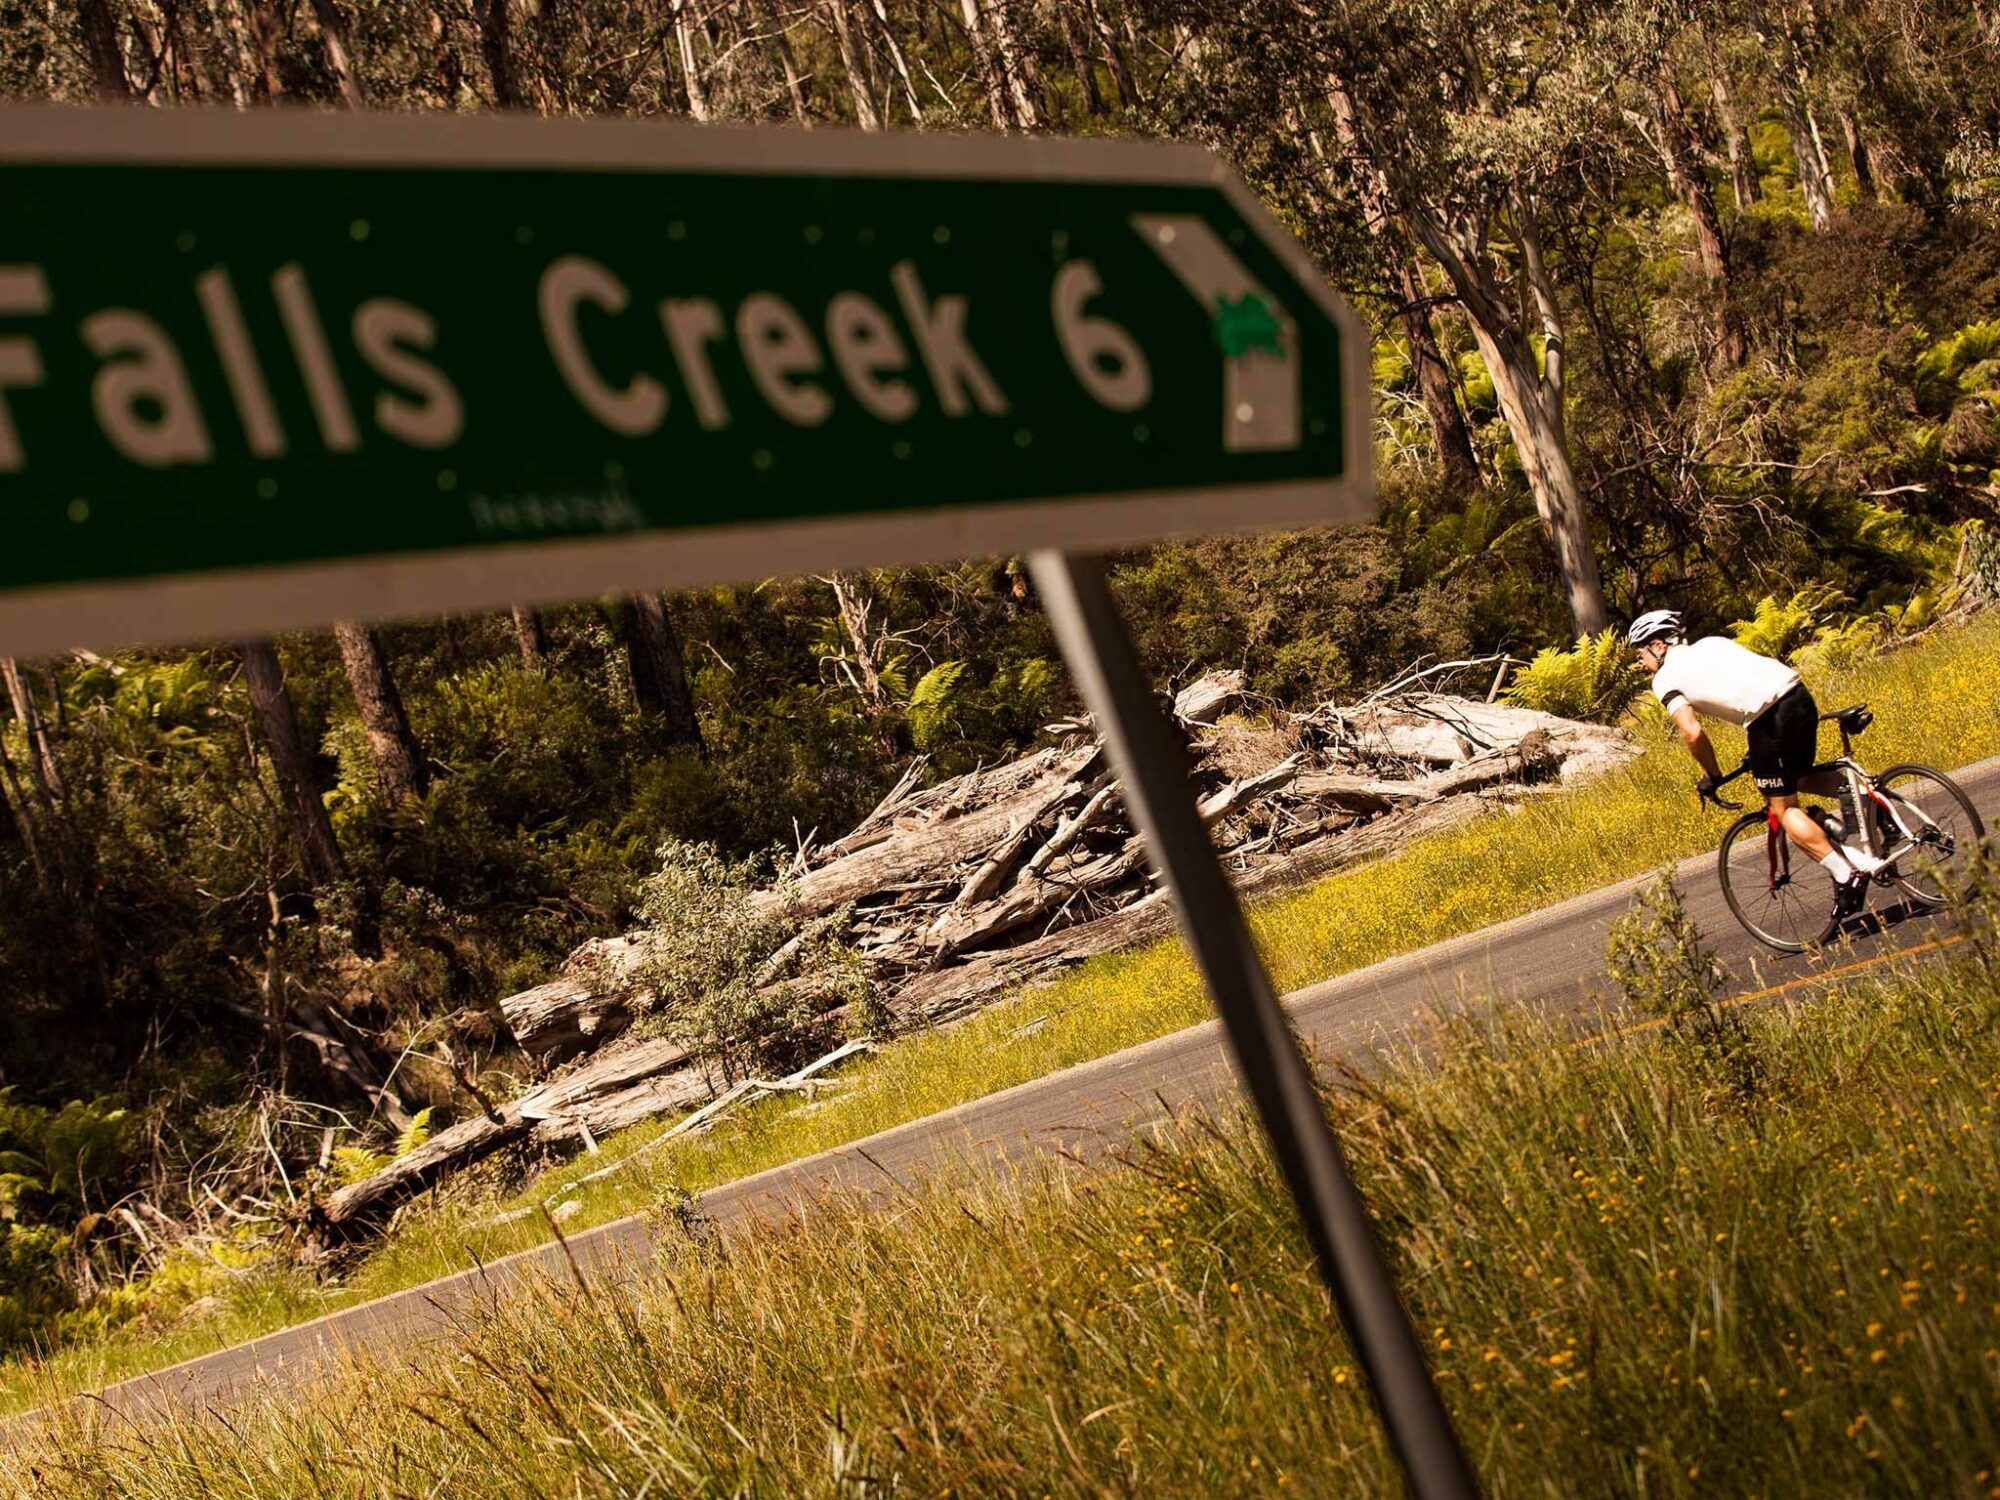 7 Peaks Ride - Falls Creek